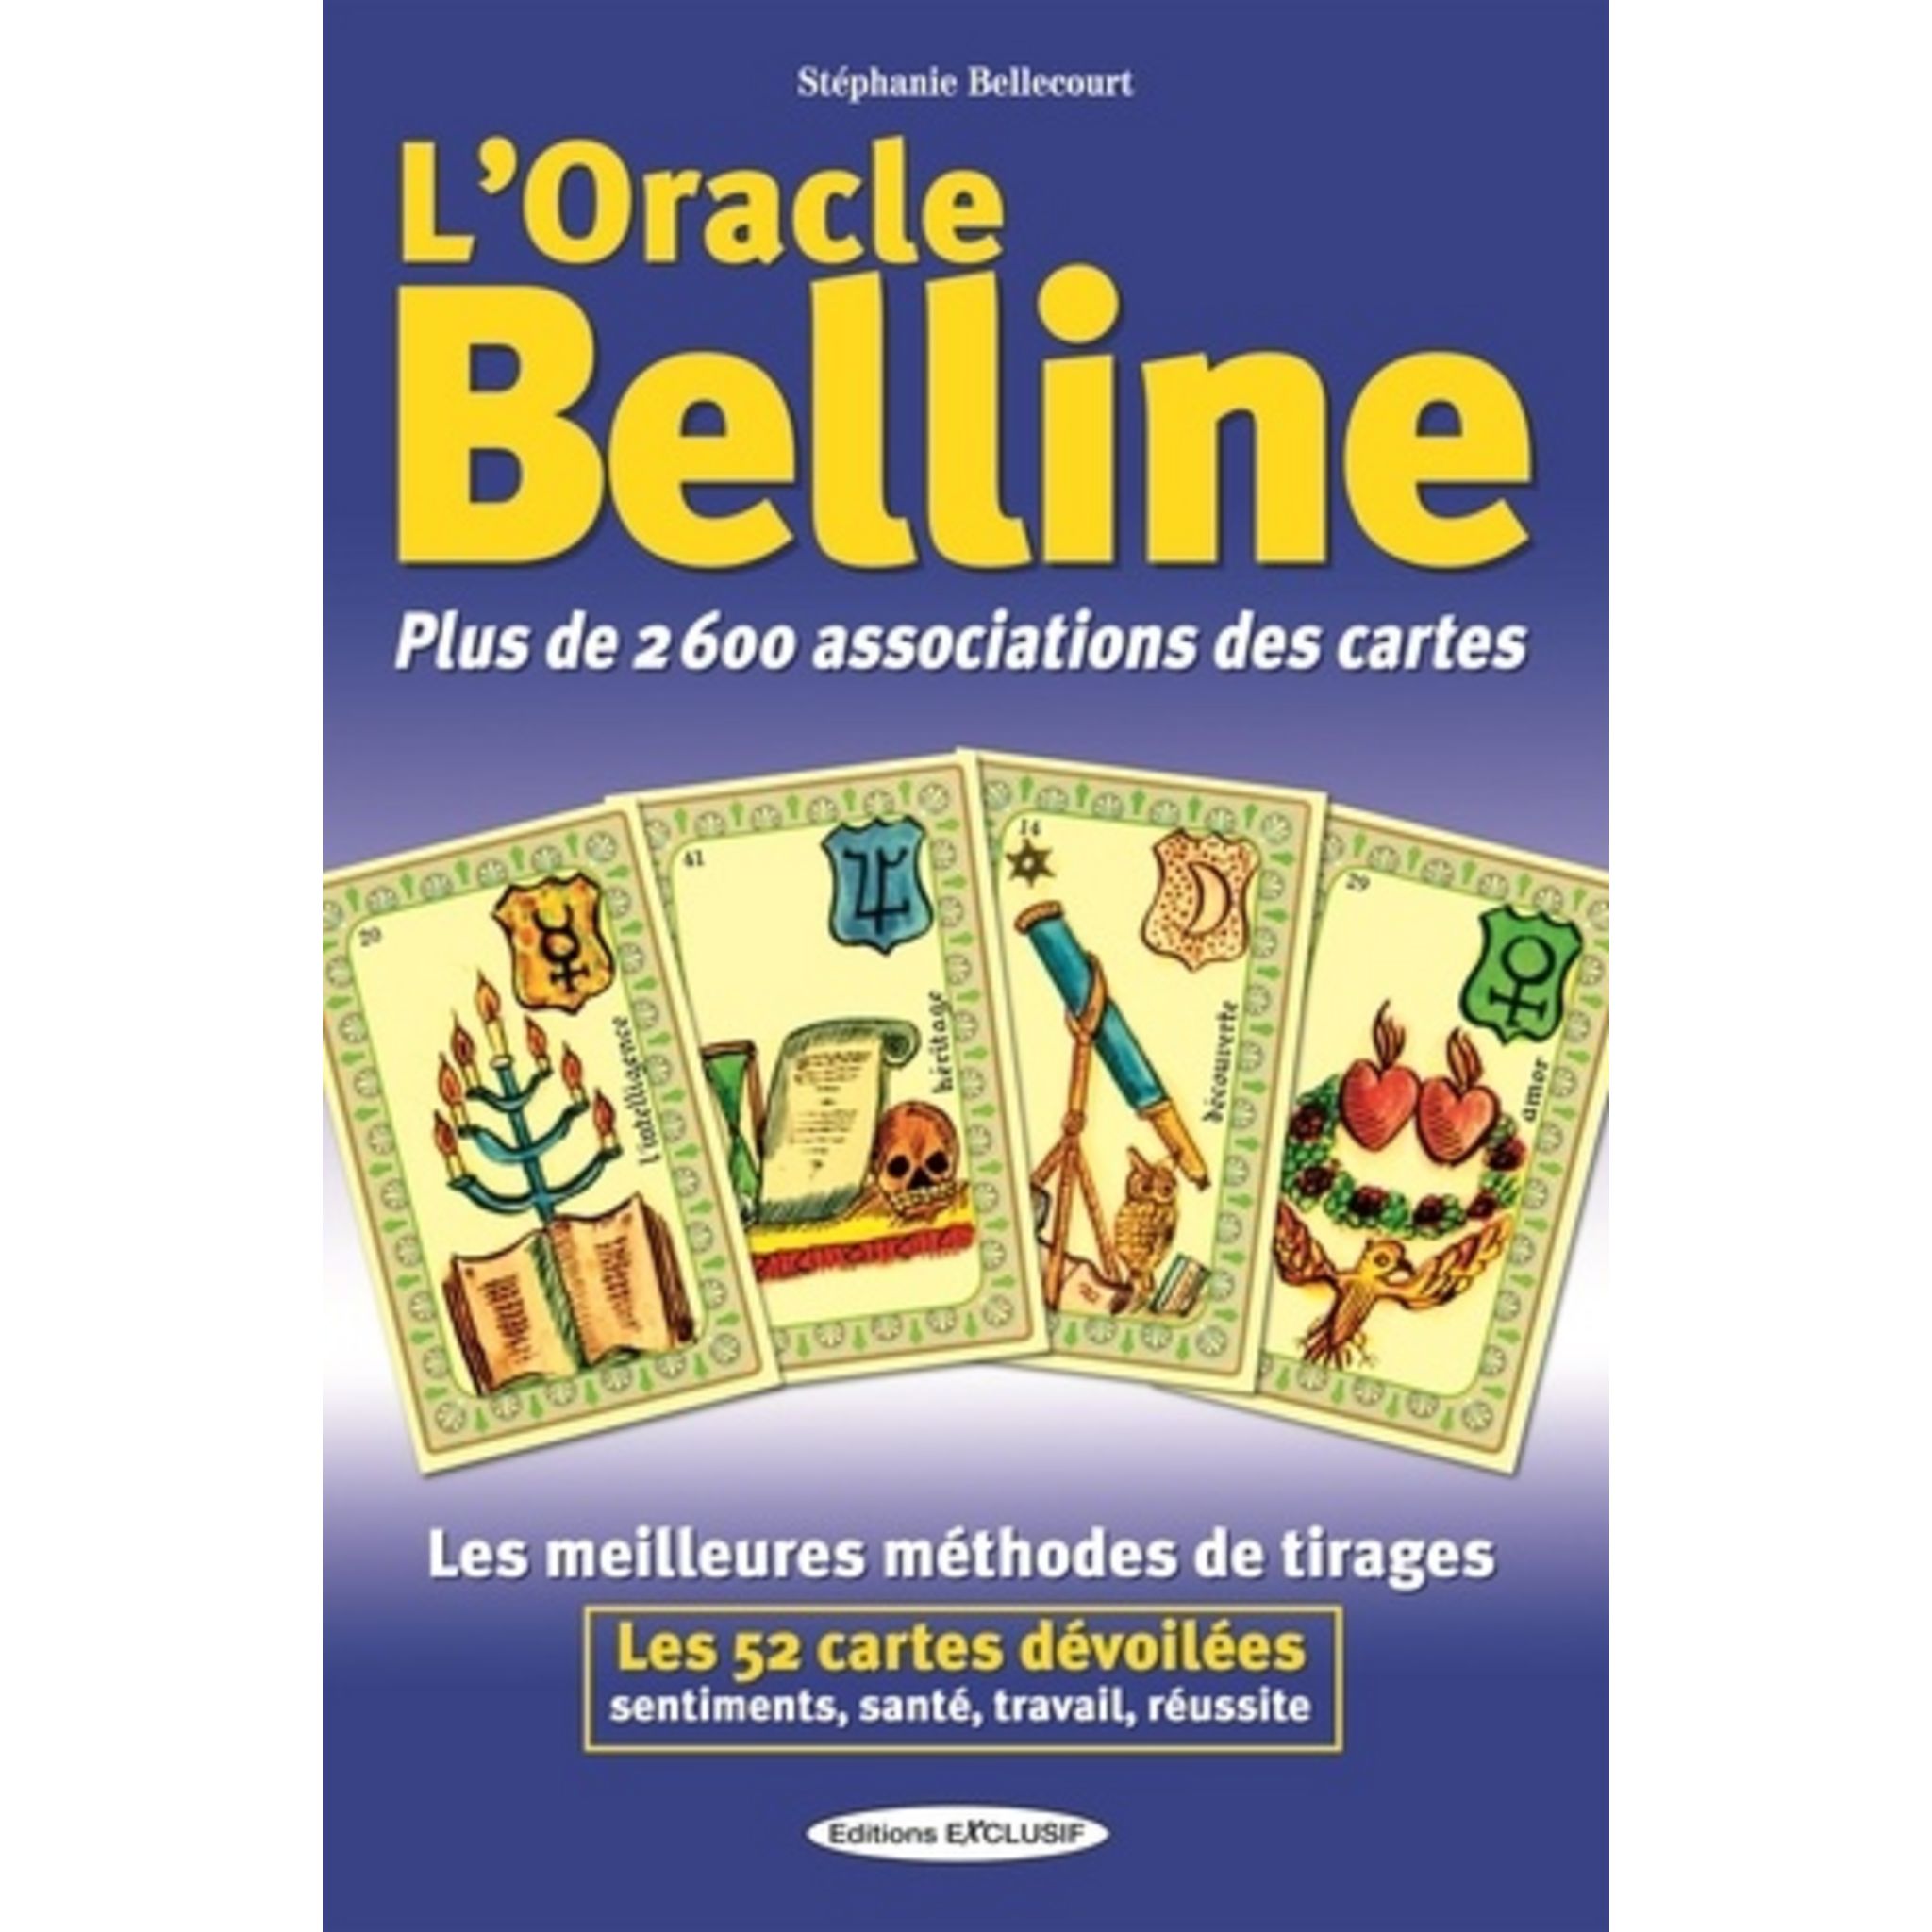 L'ORACLE BELLINE. PLUS DE 2600 ASSOCIATIONS DES CARTES, Bellecourt